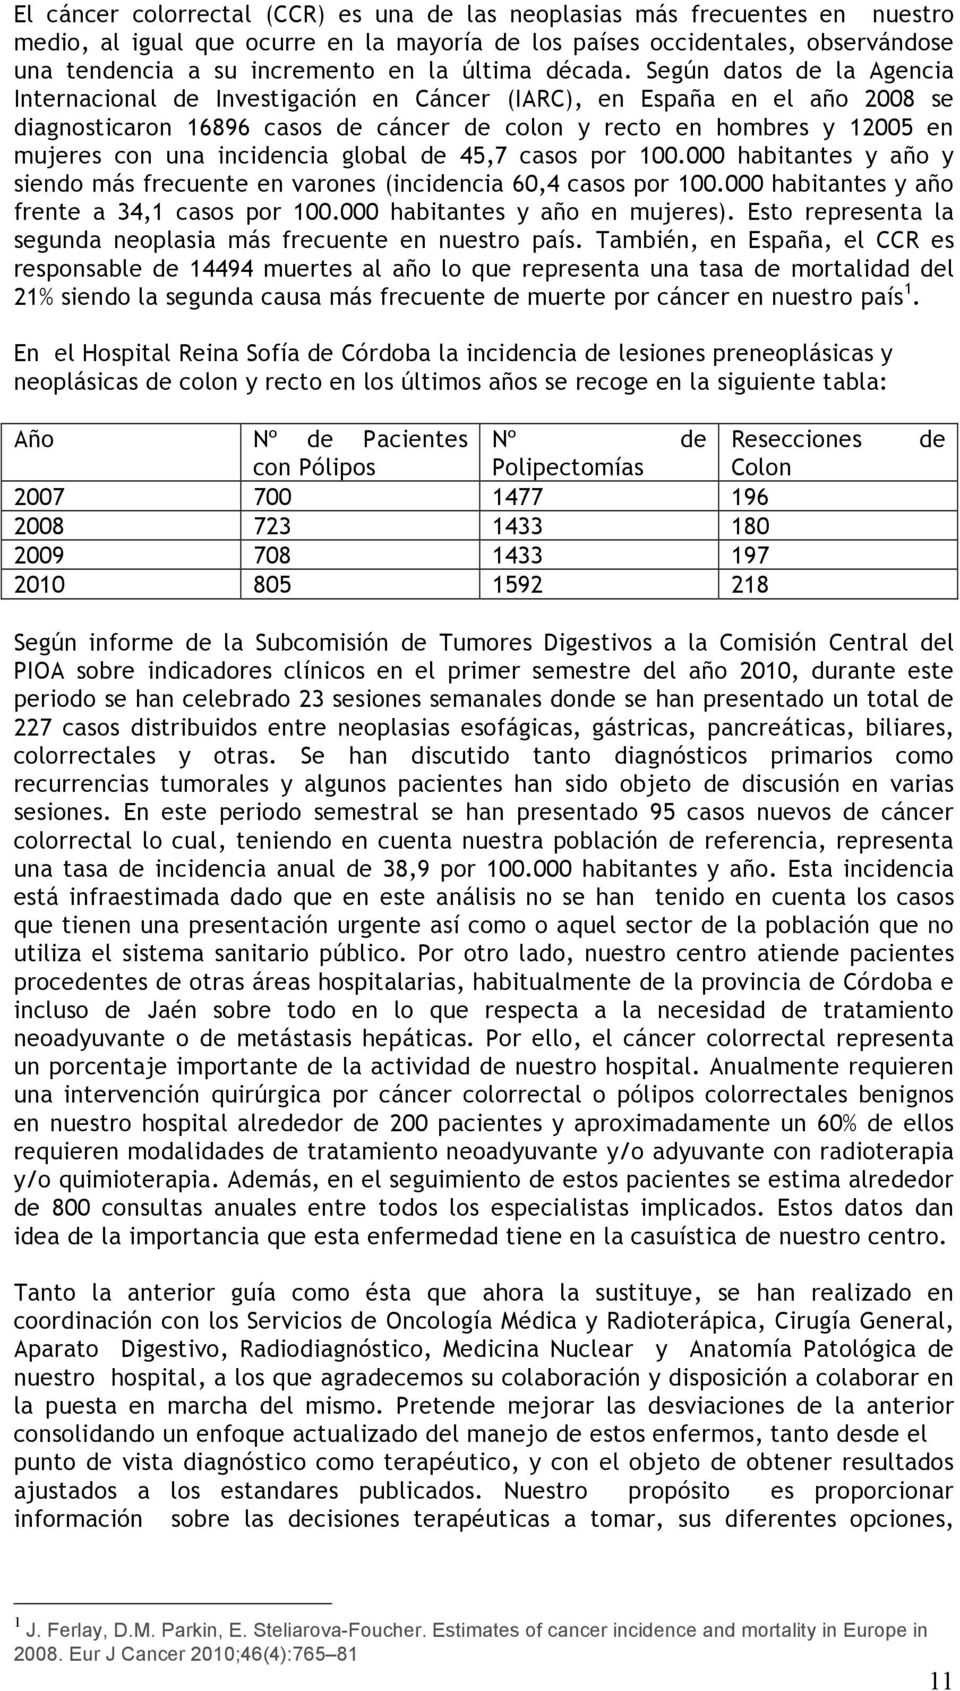 Según datos de la Agencia Internacional de Investigación en Cáncer (IARC), en España en el año 2008 se diagnosticaron 16896 casos de cáncer de colon y recto en hombres y 12005 en mujeres con una